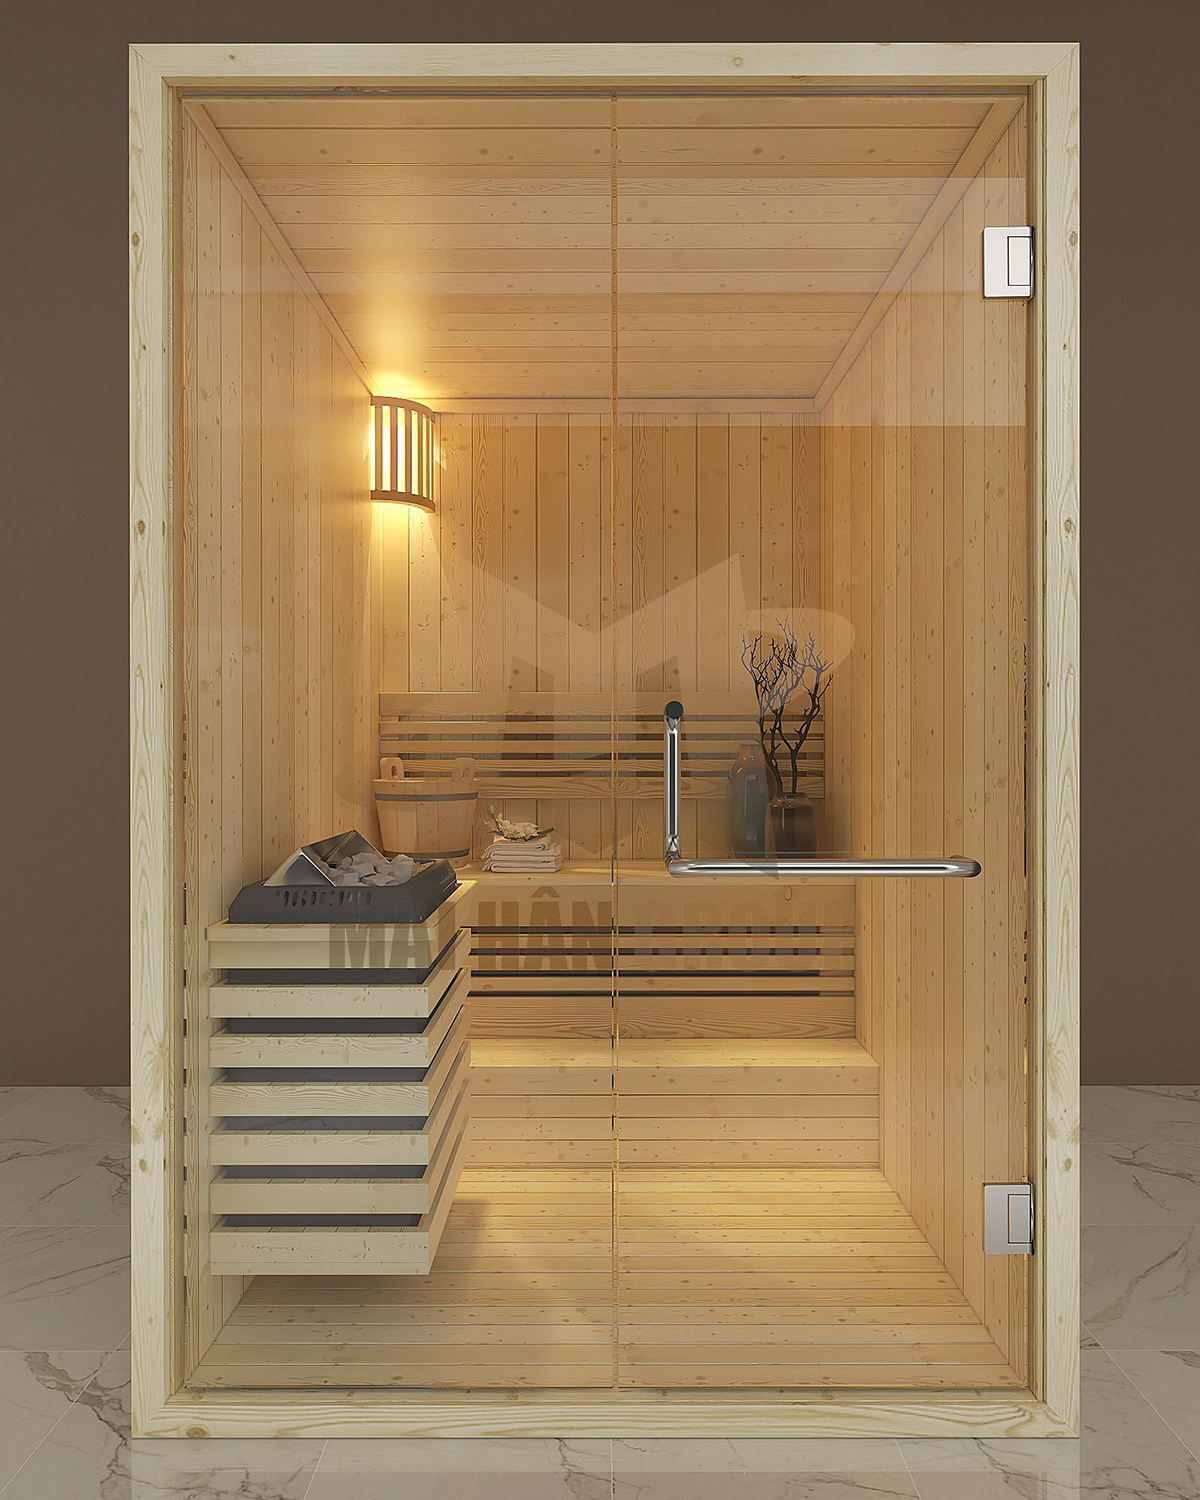 Phòng xông hơi khô sauna truyền thống rất phổ biến và được ưa chuộng hiện nay